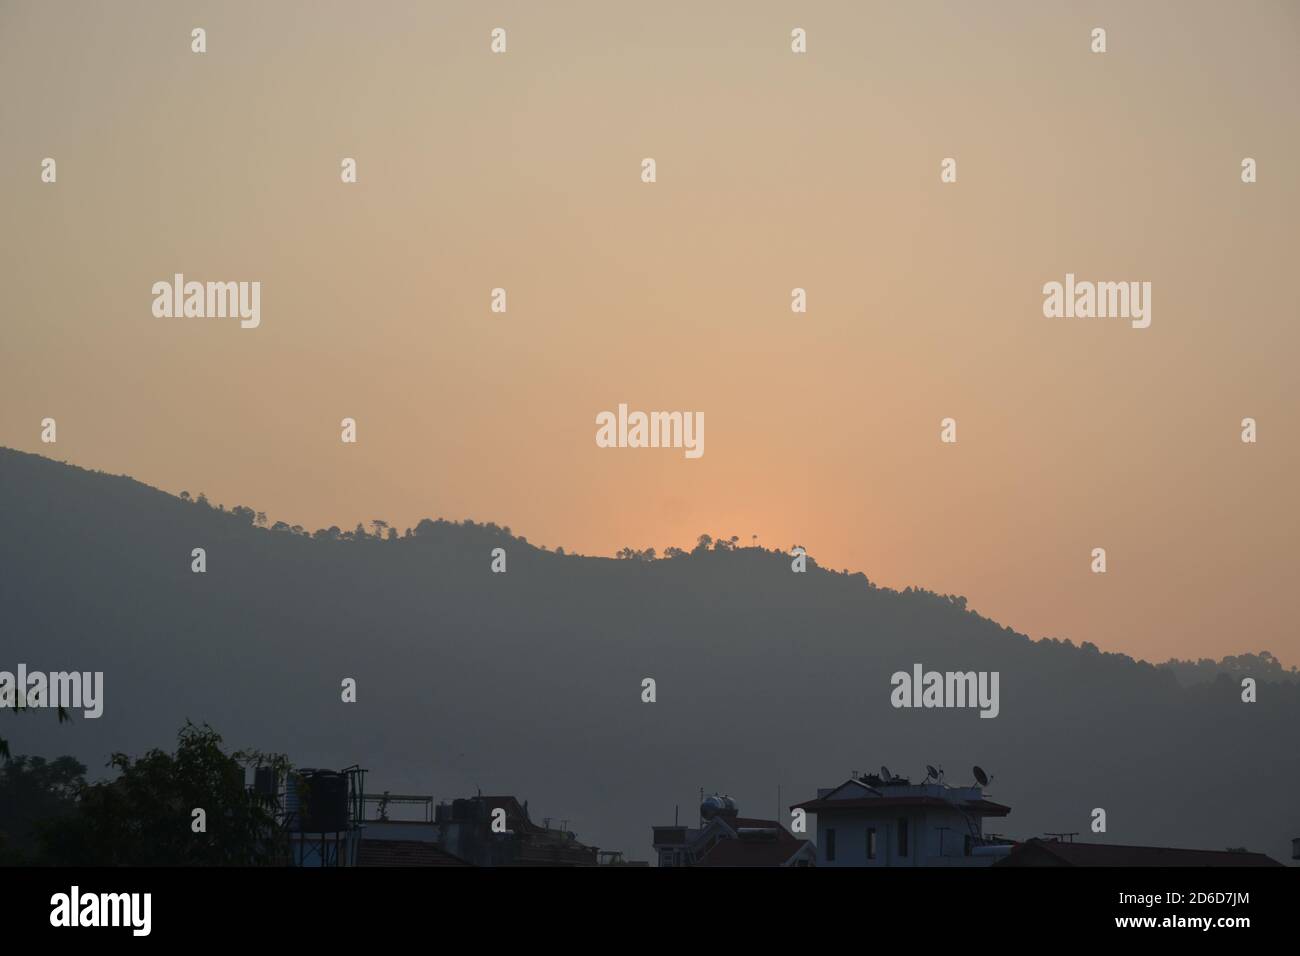 landscape as seen in Kathmandu valley, Nepal Stock Photo